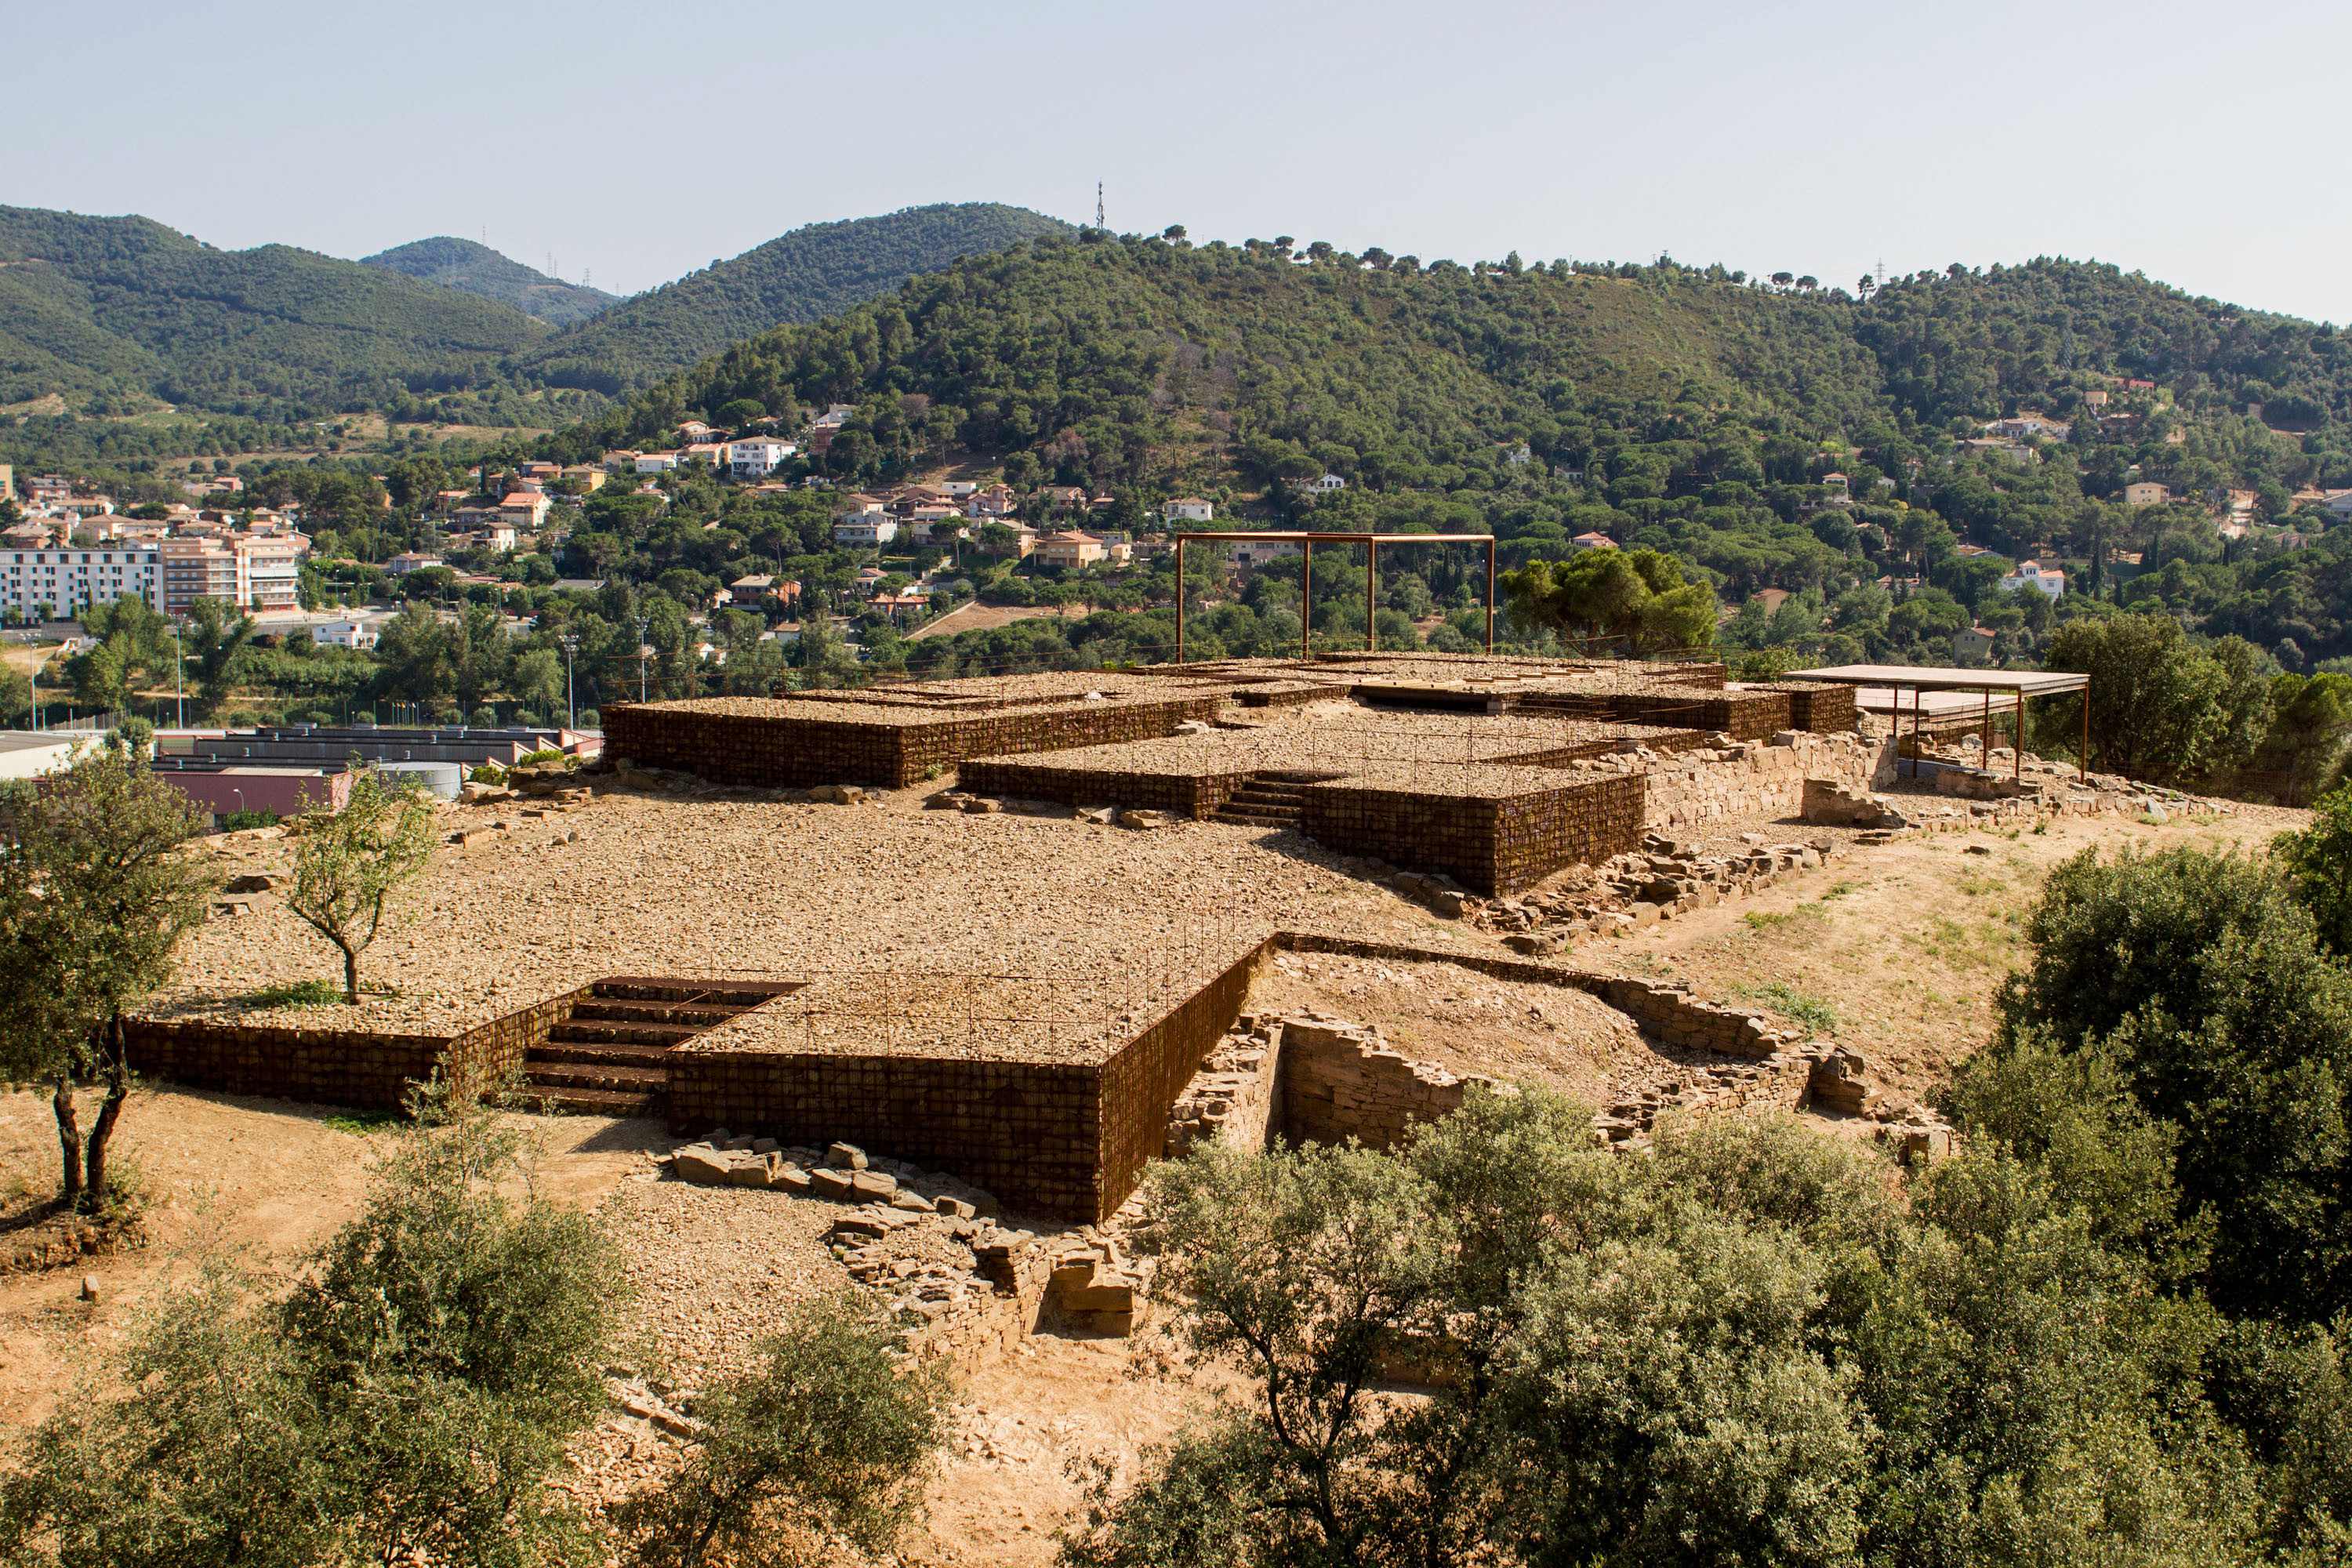 Medaglia d’oro al progetto dello studio spagnolo dell’architetto Toni Girones, "capace di recuperare la memoria delle rovine romane di Can Tacò in maniera davvero suggestiva". 